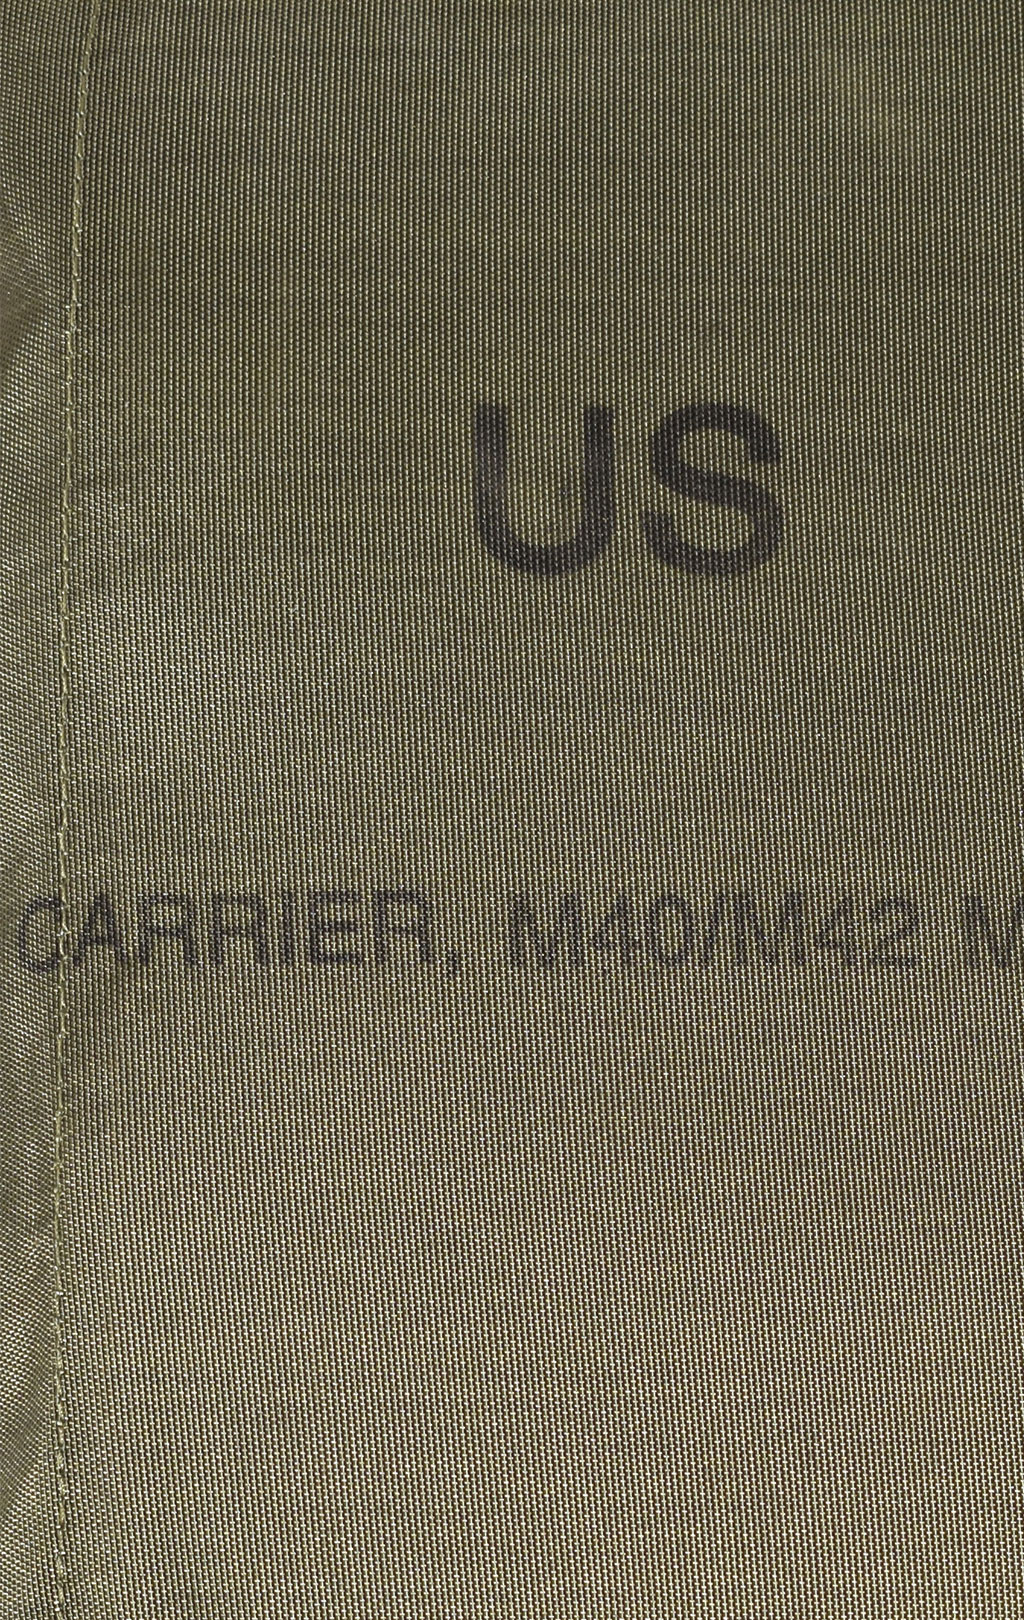 Сумка противогазная CARIER M40/M42 нейлон olive США